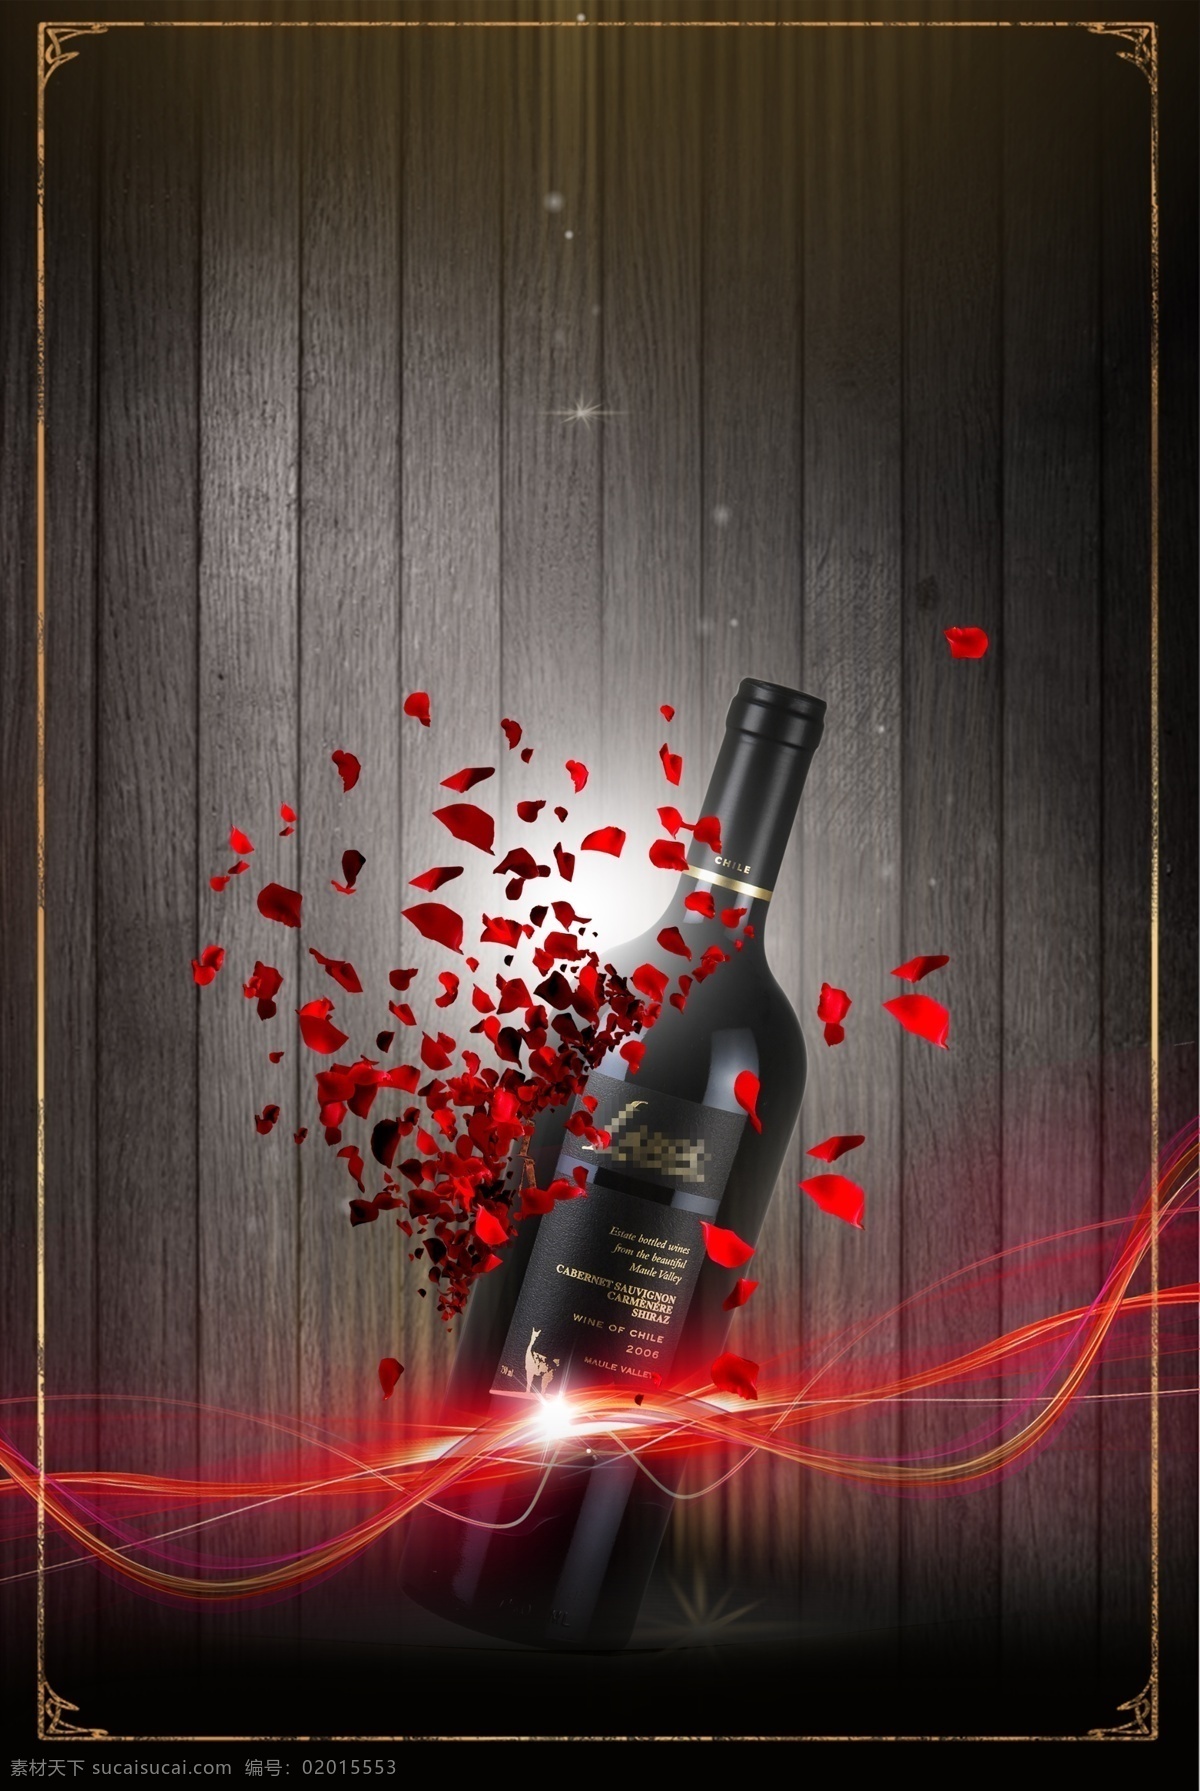 大气 尊贵 葡萄酒 海报 红酒 商业宣传背景 海报背景 黑色背景 深红色 质感 纹理